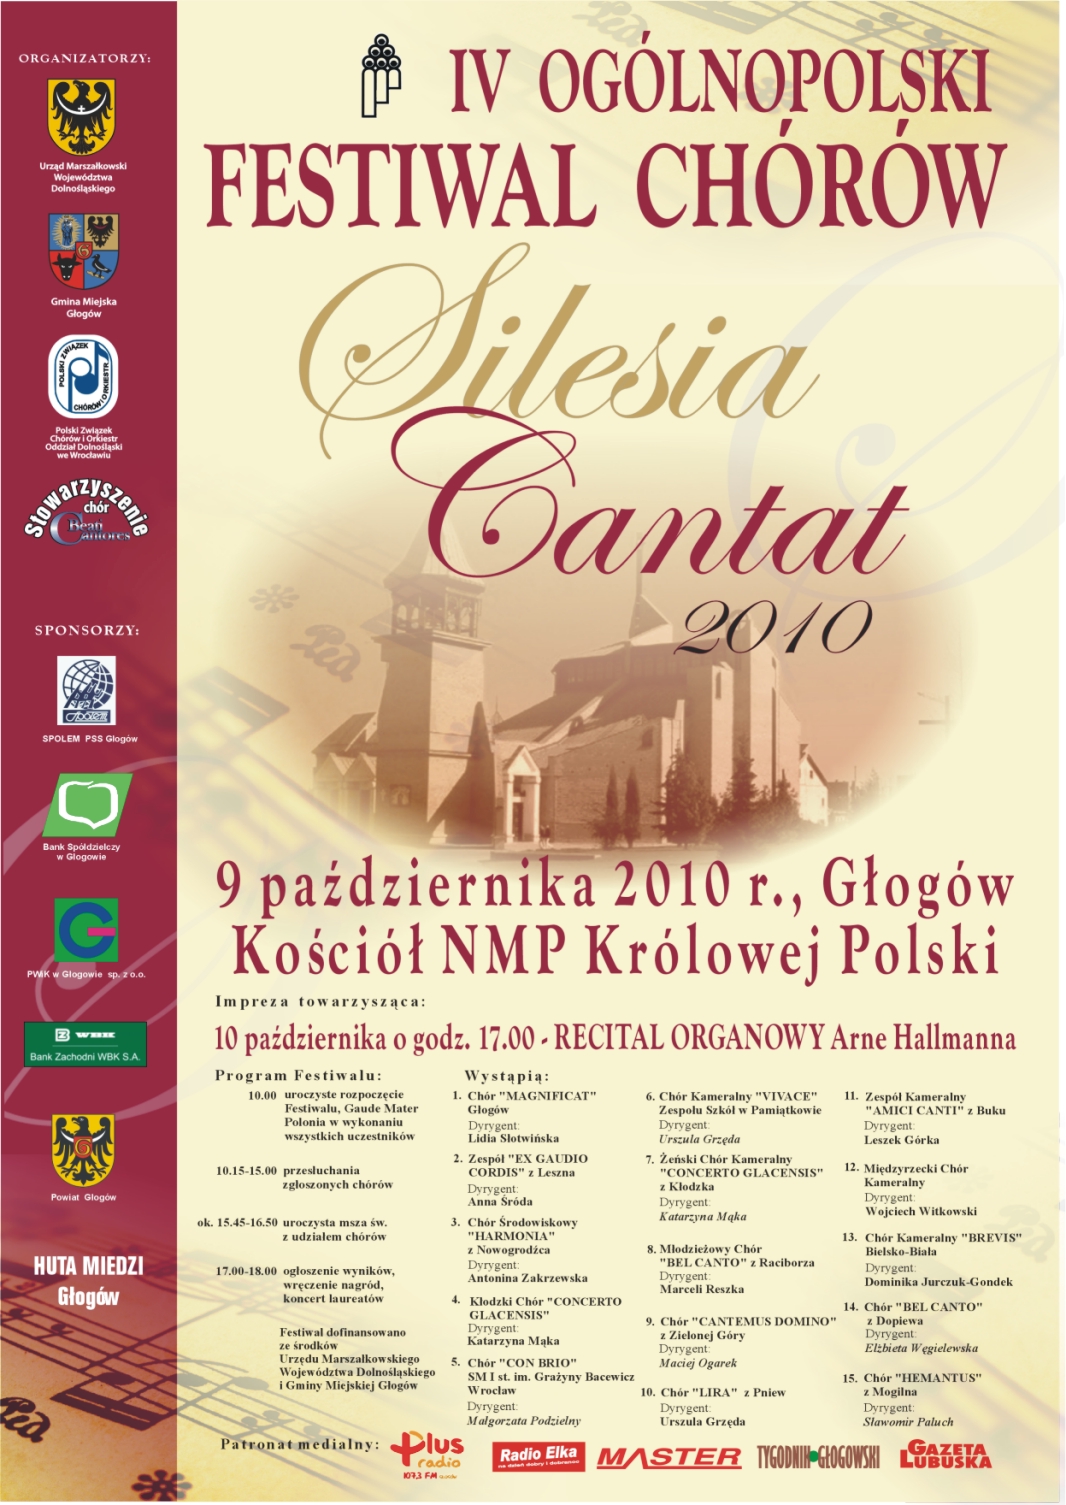 Silesia Cantat 2010